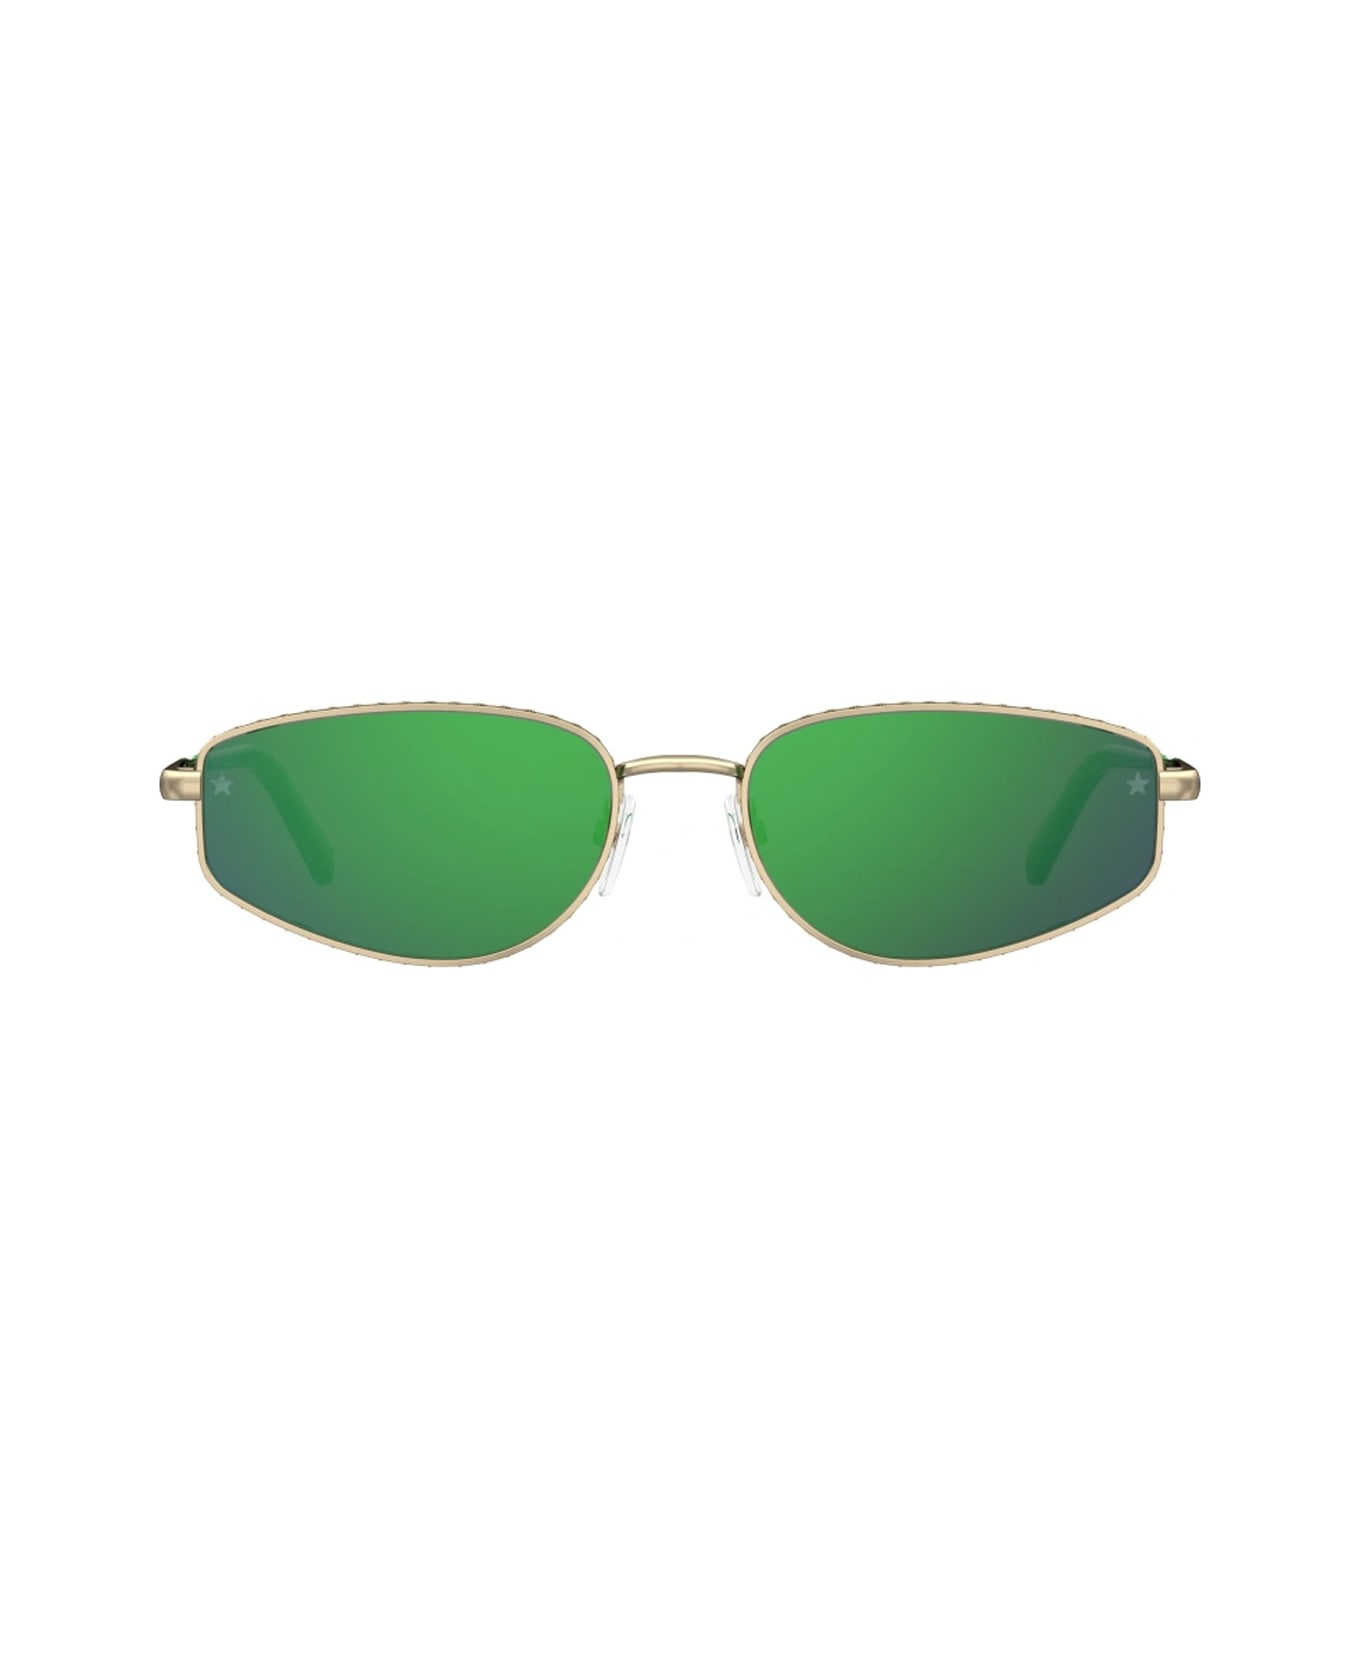 Chiara Ferragni Cf 7025/s Pef/z9 Gold Green Sunglasses - Oro